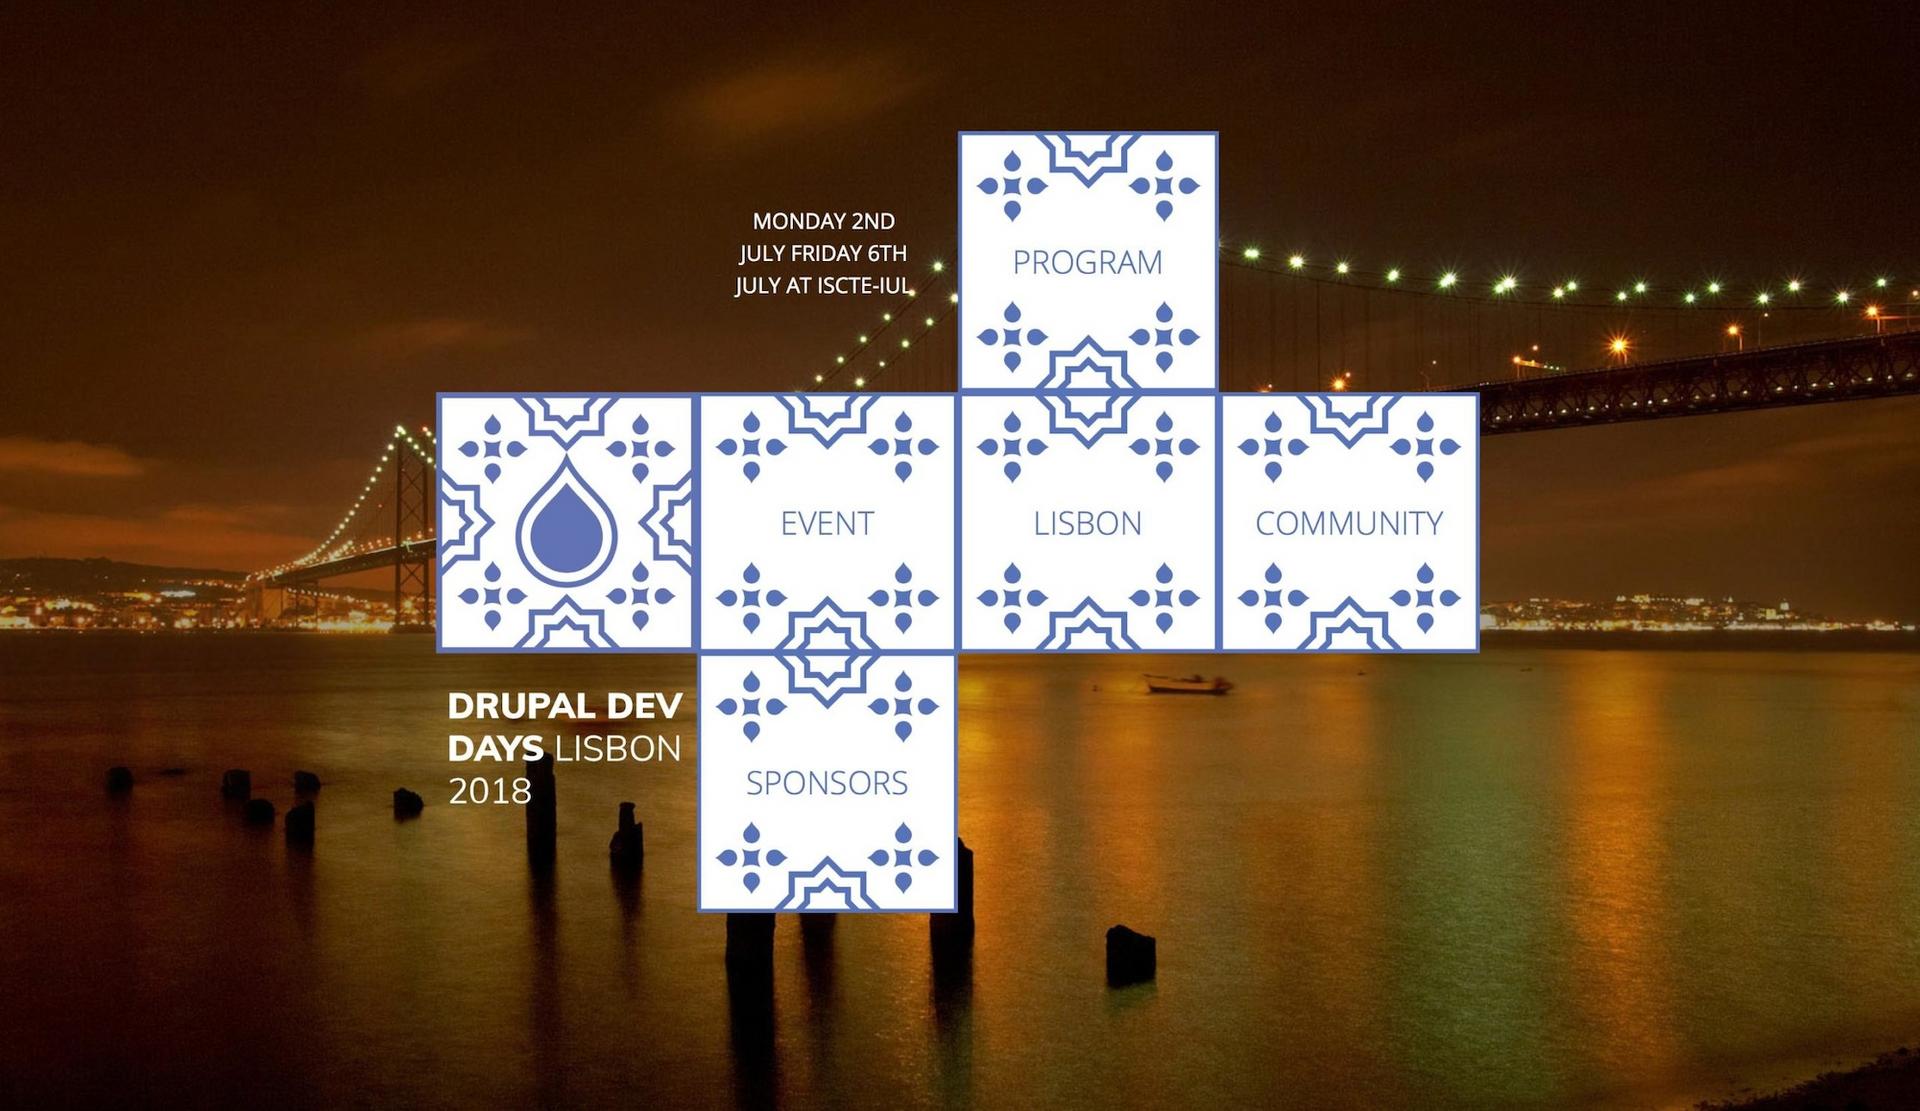 Drupal Dev Days Lisbon 2018